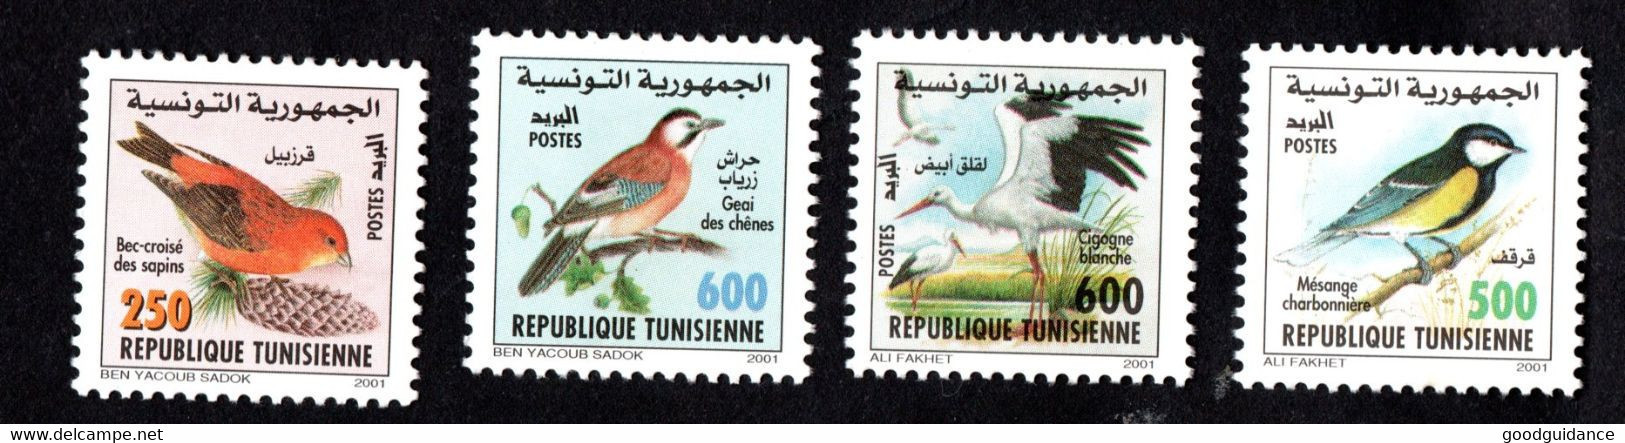 2001-Tunisie-Oiseaux De Tunisie-Cigogne Blanche-Bec-croisé– Geai Des Chênes-Mésange-Charbonnière– Série Compl.4v.MNH** - Cernícalo